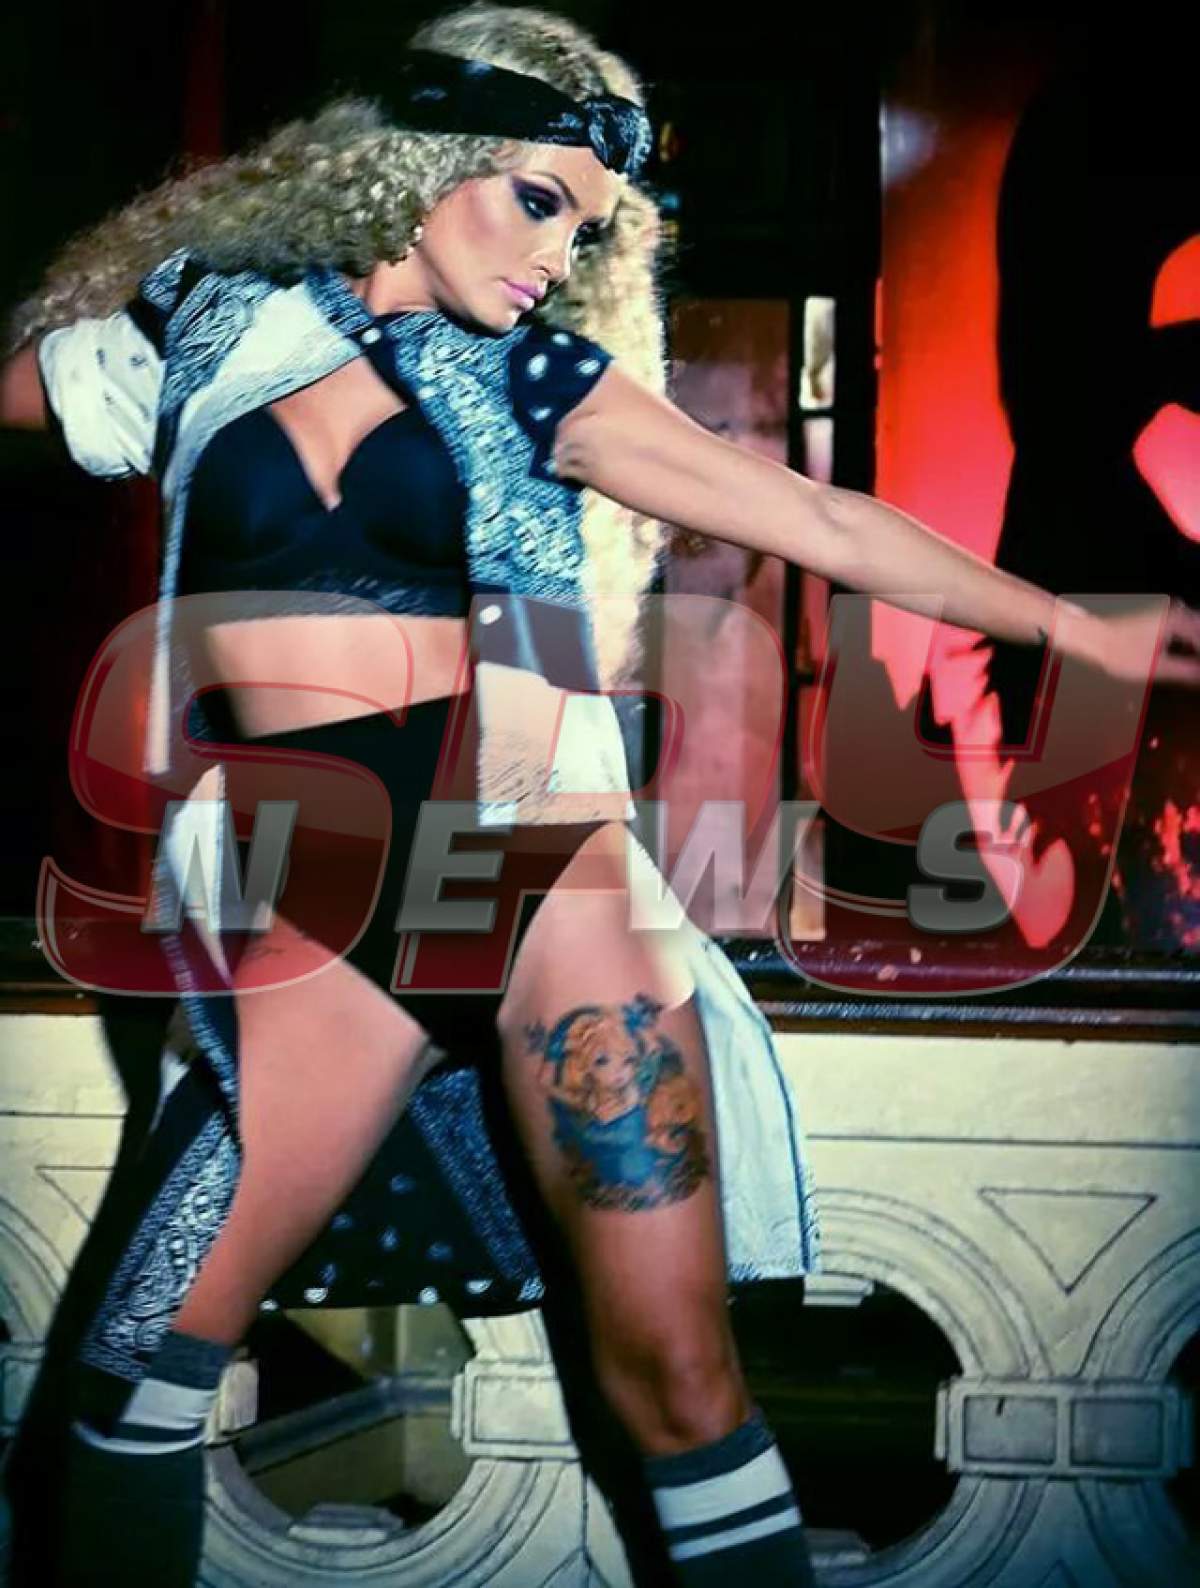 EXCLUSIV!!! Gest incredibil făcut de Rolla Sparks după ce a fost implicată în scandalul ”Prostituție în showbiz”